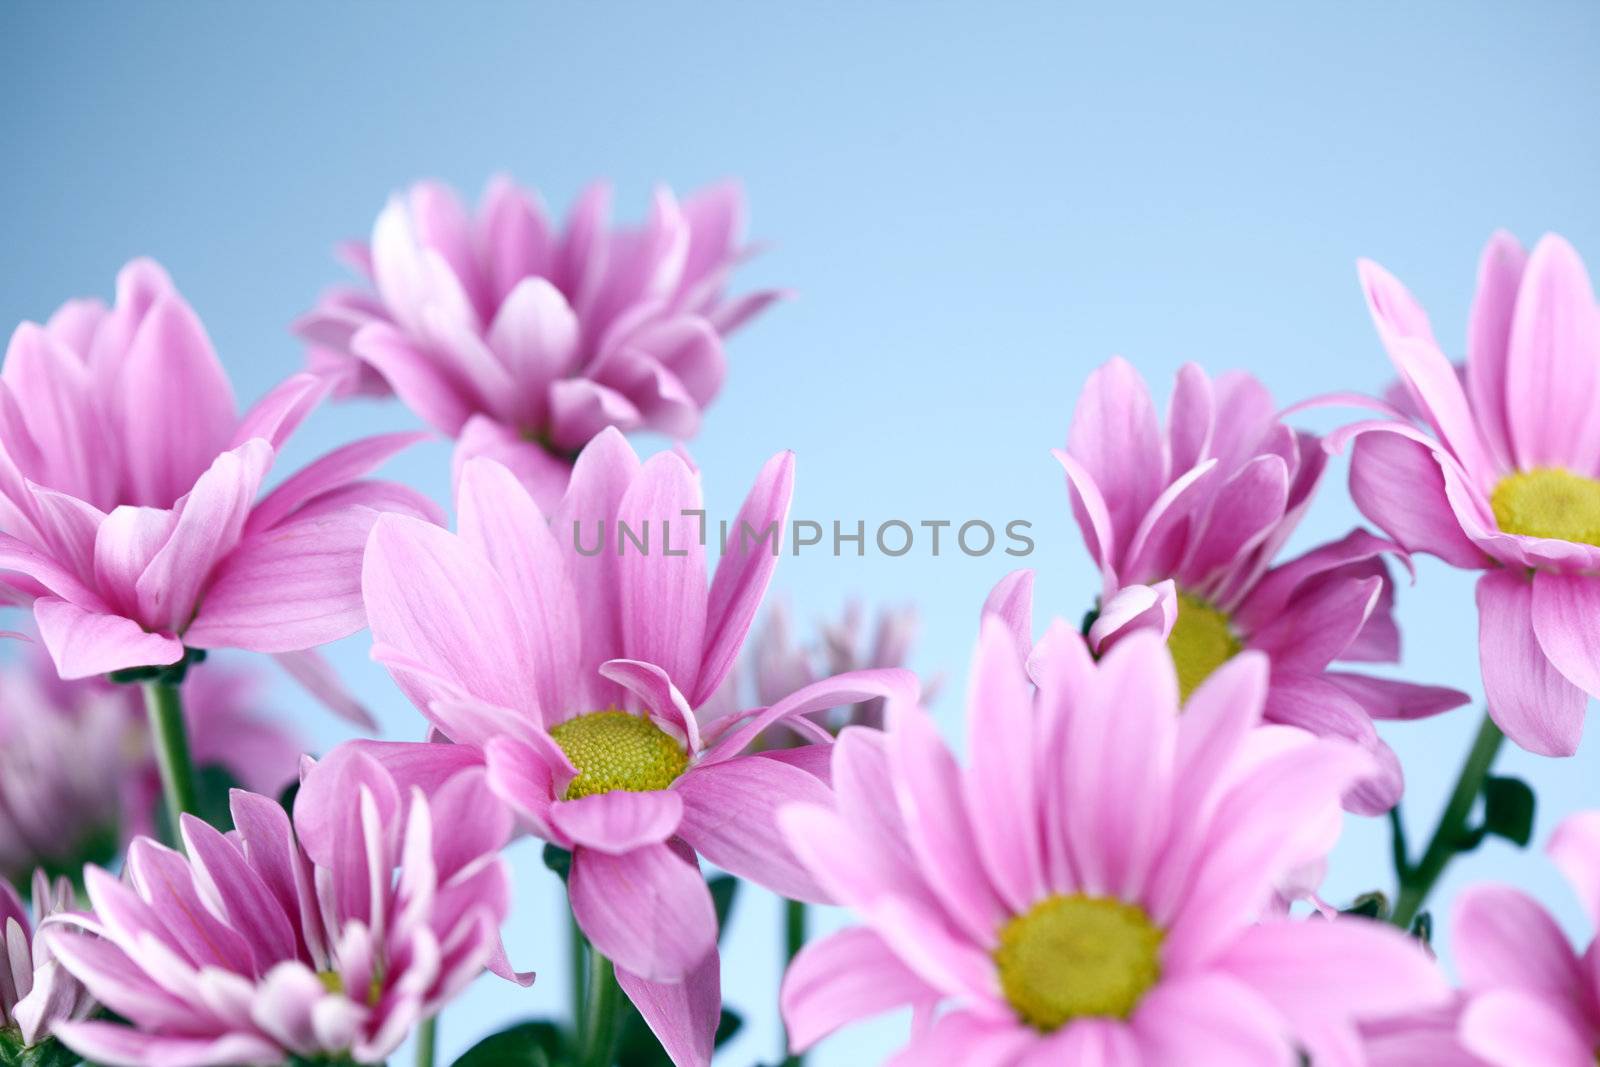 pink chrysanthemum macro close up